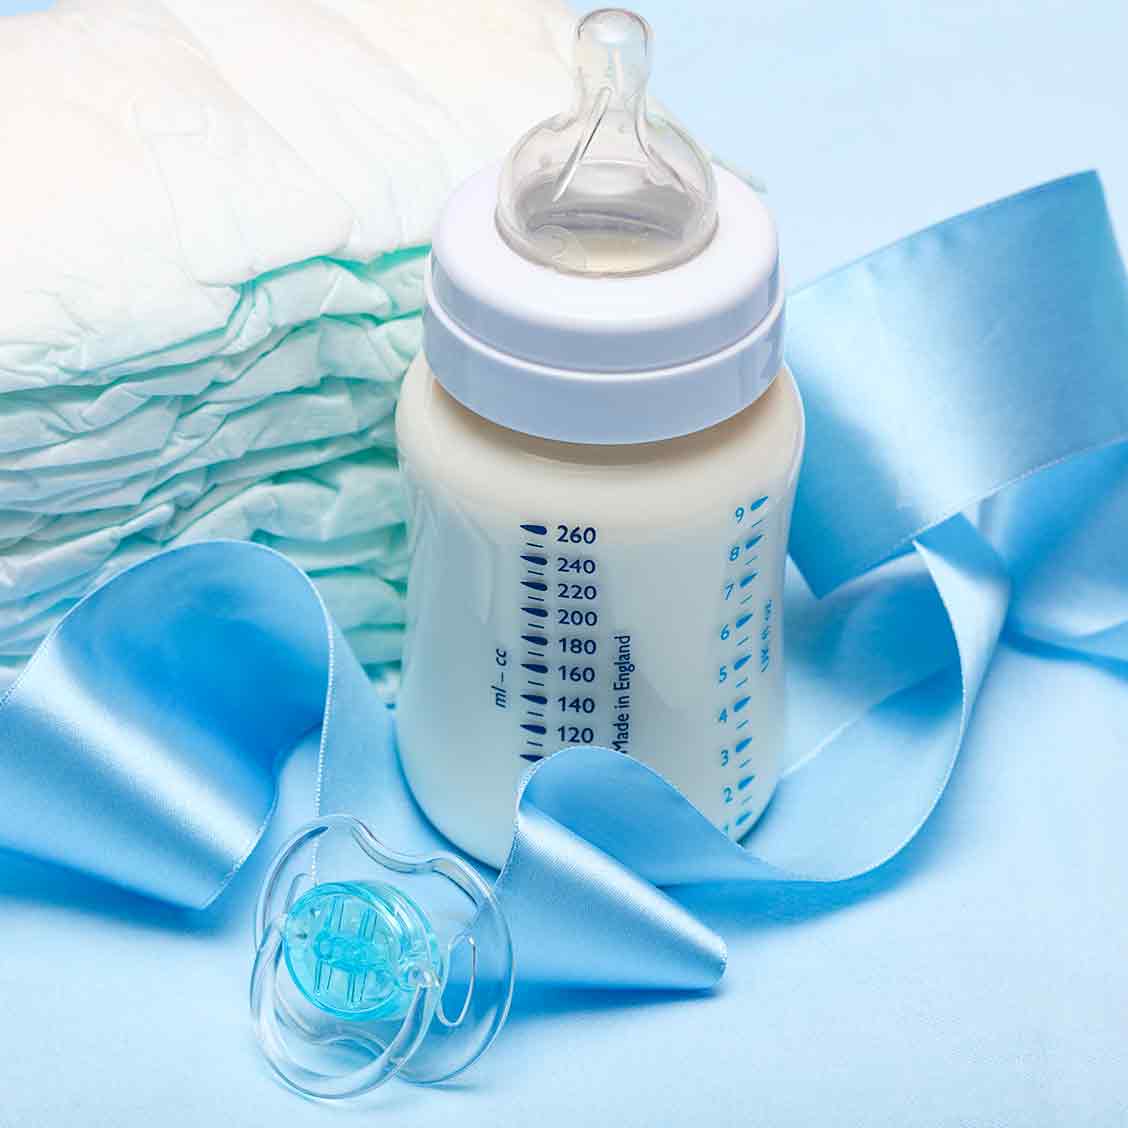 Eine Milchflasche für Babys steht auf blauem Untergrund. Daneben liegen Wegwerfwindeln, ein Schnuller und ein blaues Seidenband.